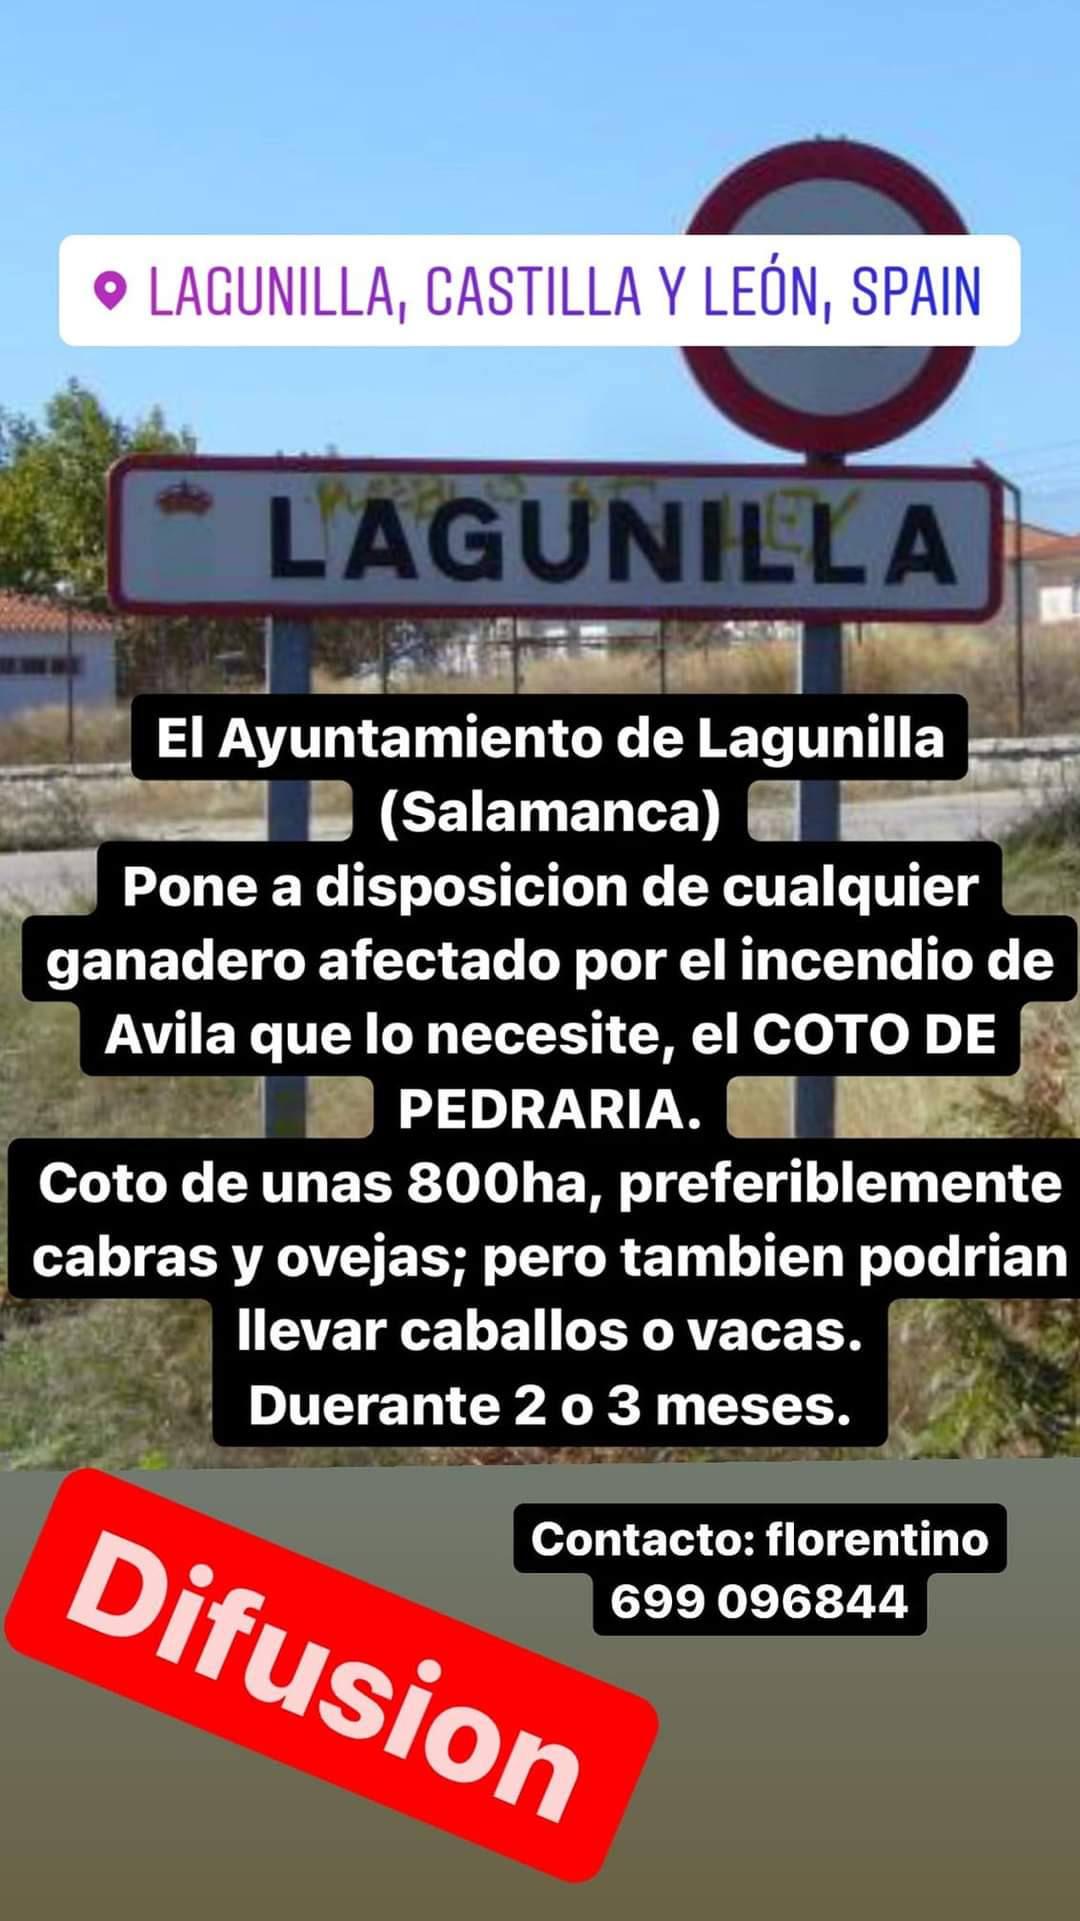 Foto 3 - Lagunilla cede un terreno de 800 hectáreas a los ganaderos afectados por el incendio de Ávila